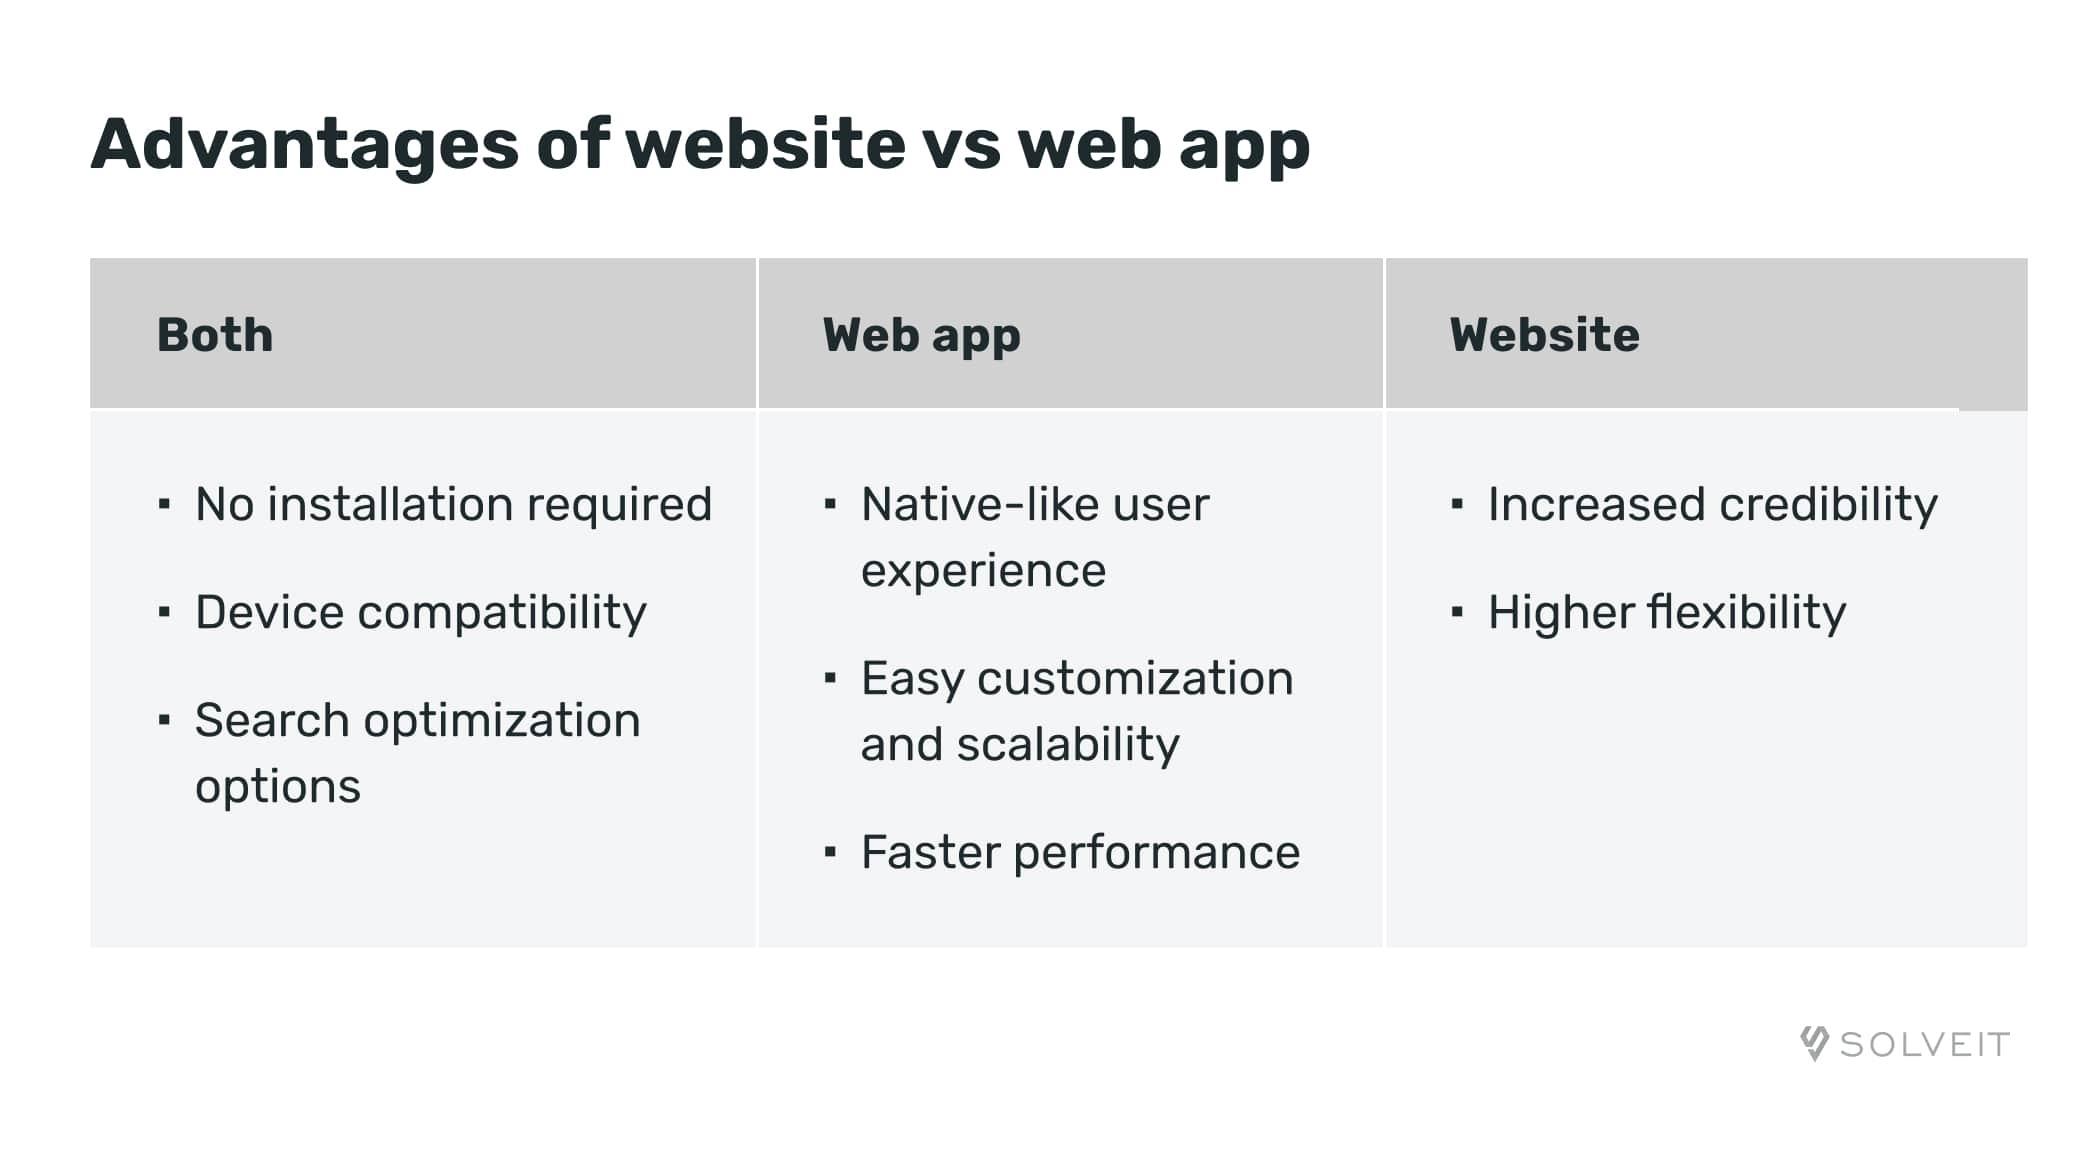 Advantages: website VS web app